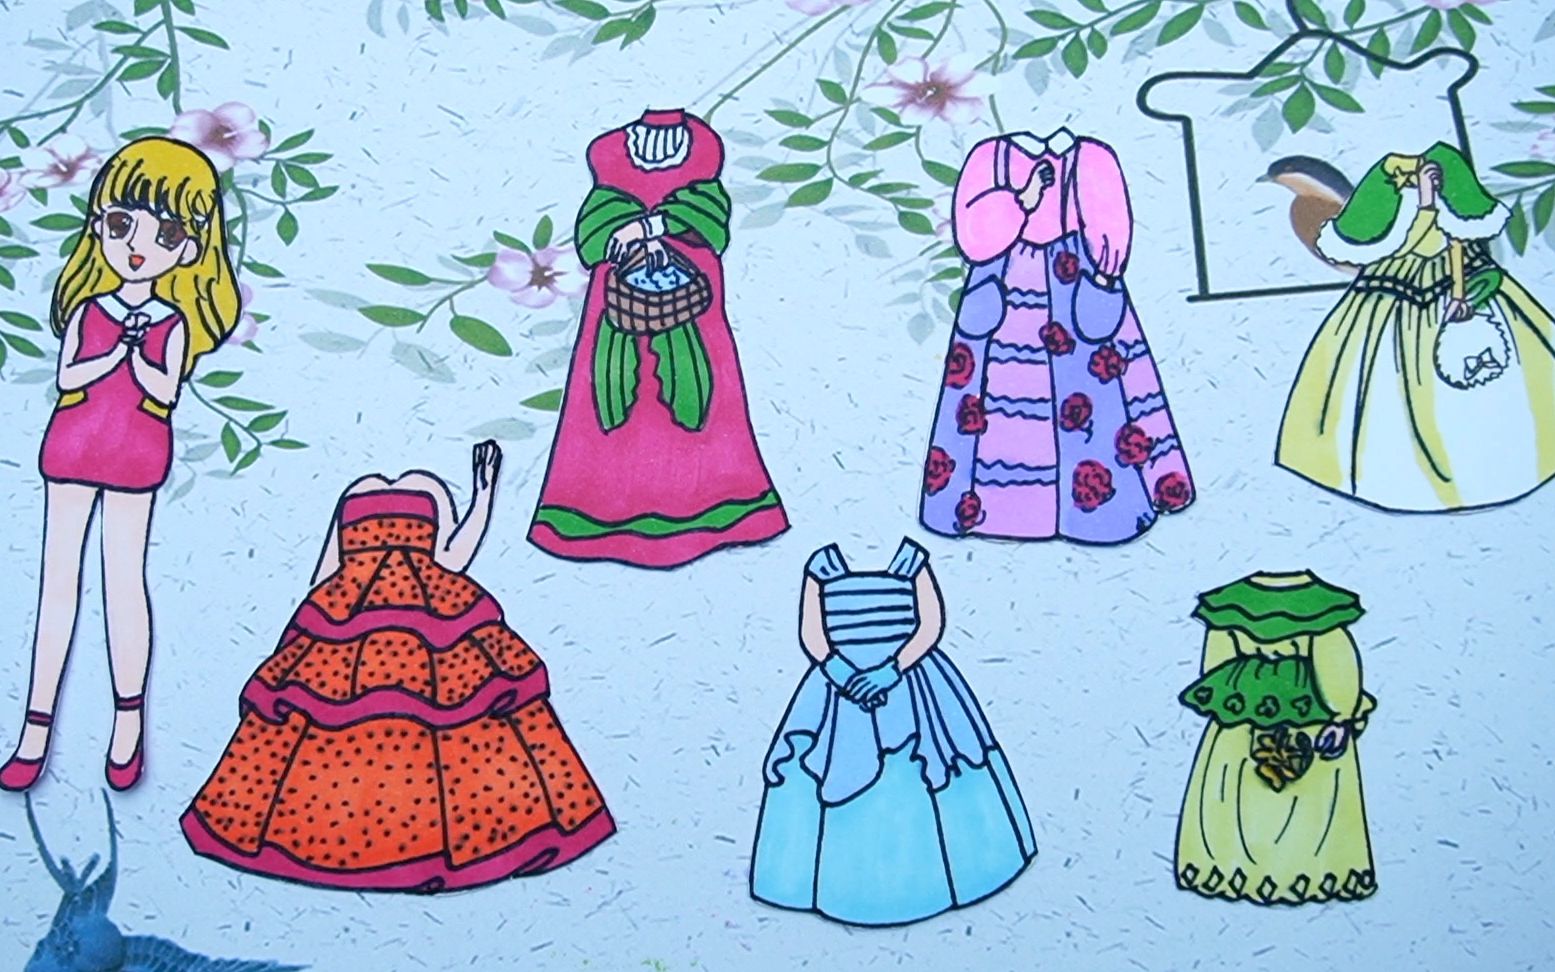 纸娃娃创意手工:手绘迪士尼爱丽丝公主,制作六款复古连衣裙